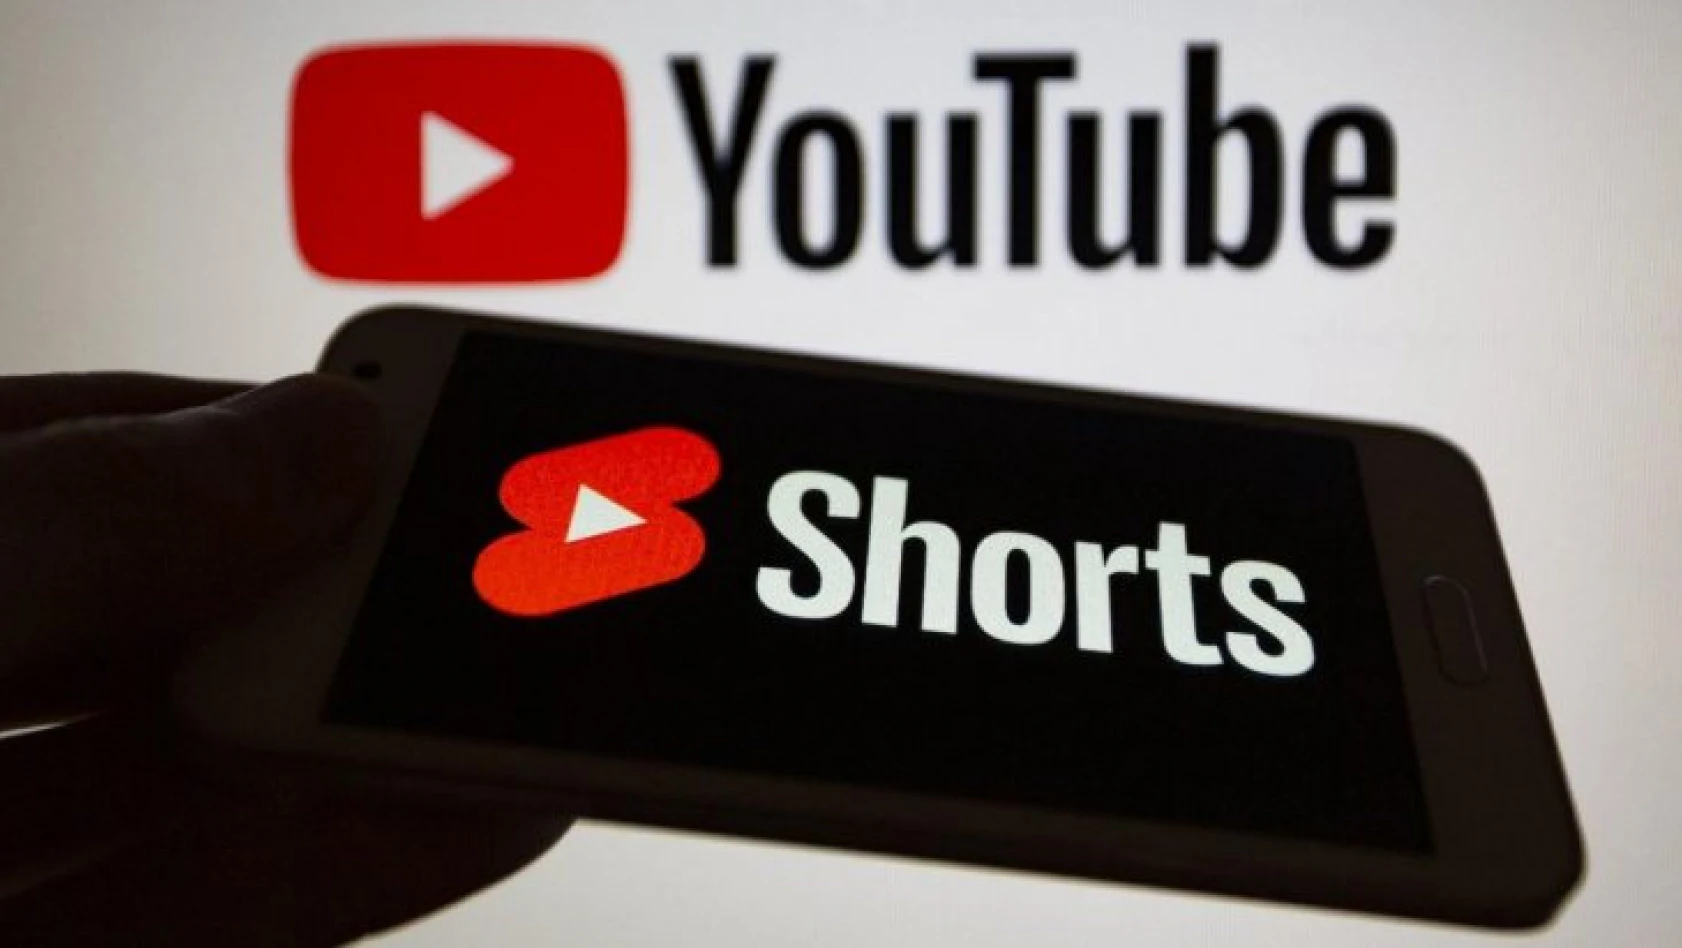 YouTube'un yeni aracı, videoları kısa hale getiriyor